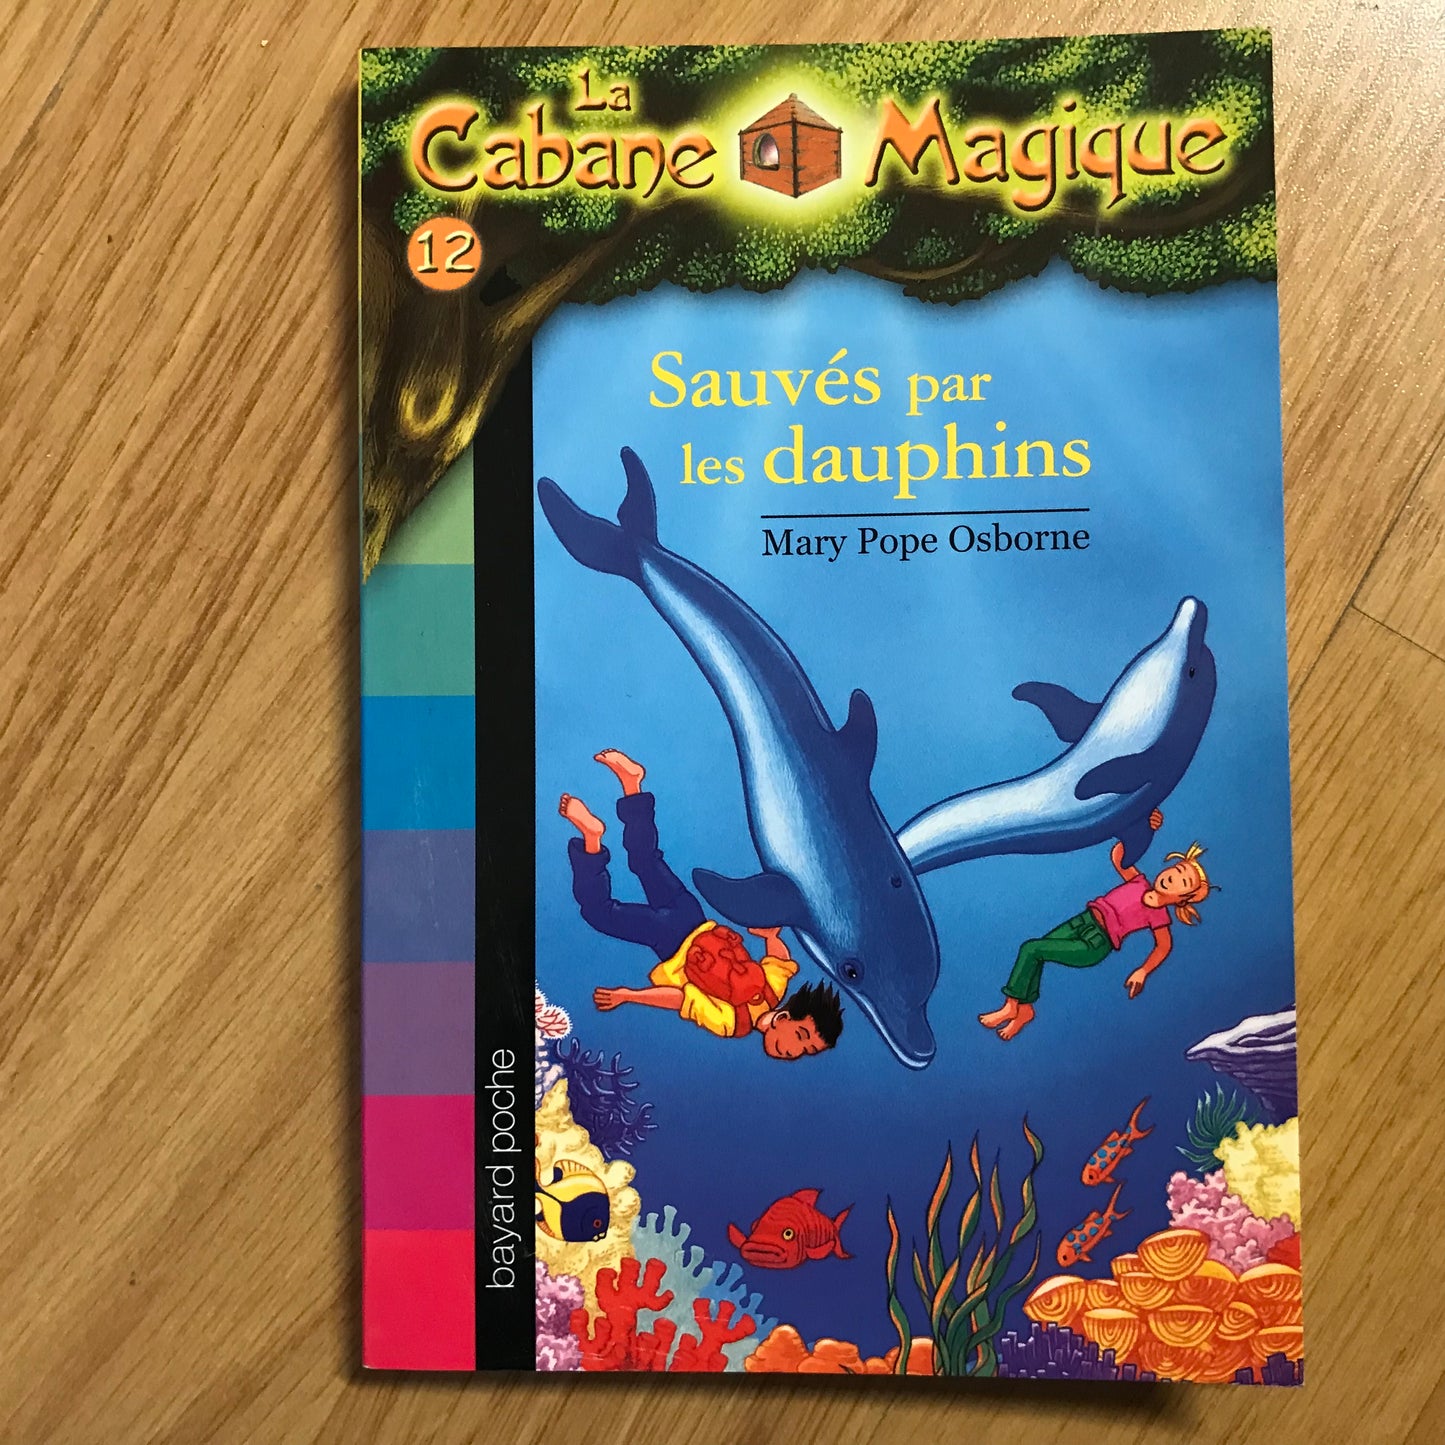 La cabane magique 12: Sauvés par les dauphins - Mary Pope Osborne